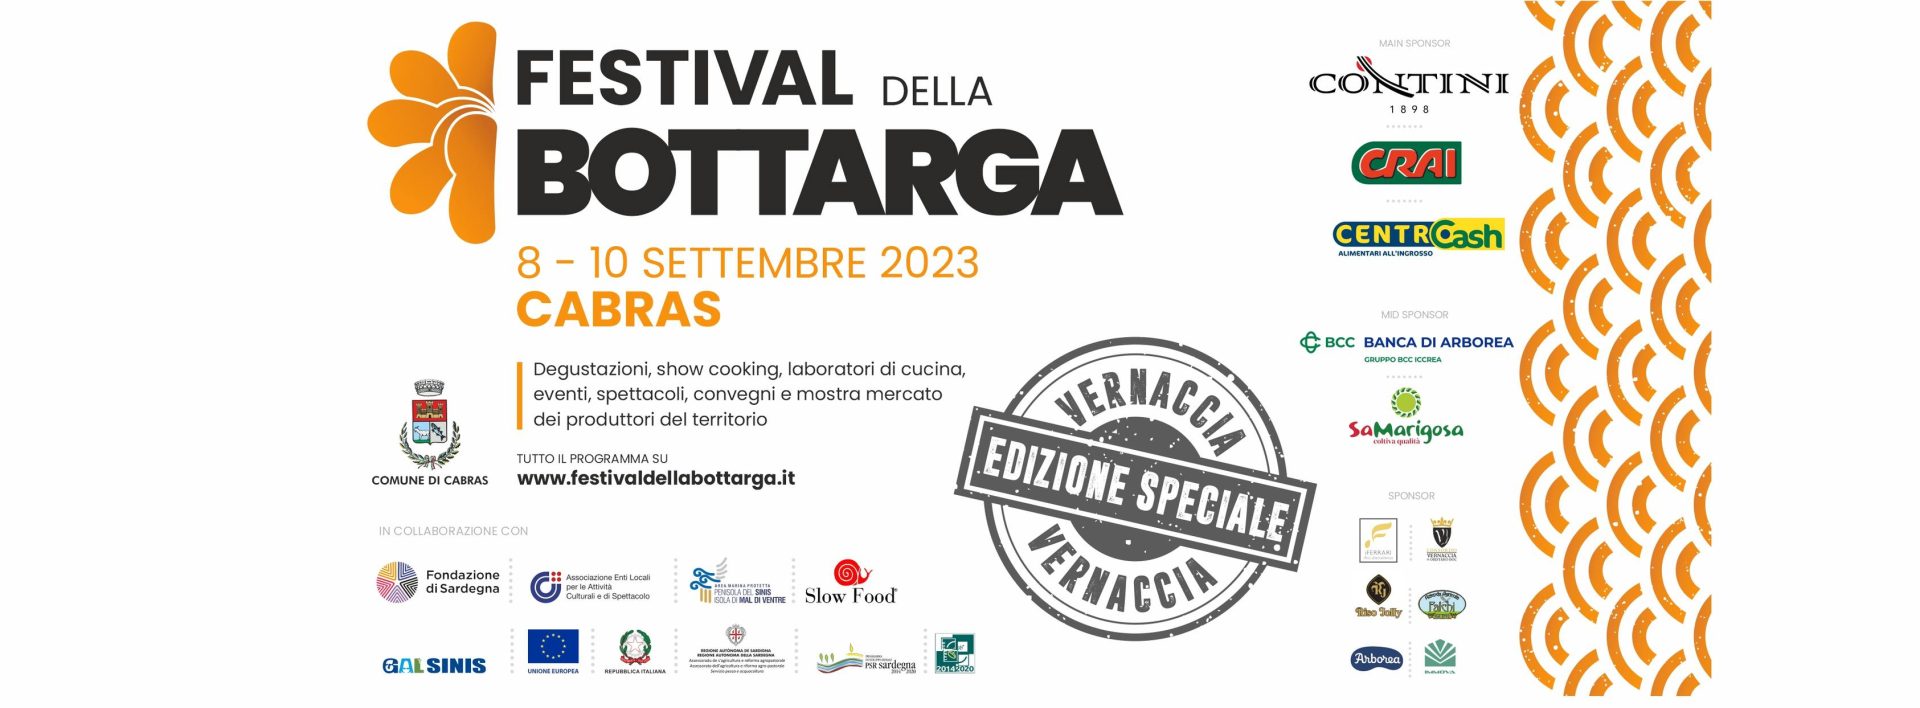 Cabras - Il Festival della Bottarga ritorna con un'edizione speciale dedicata alla Vernaccia